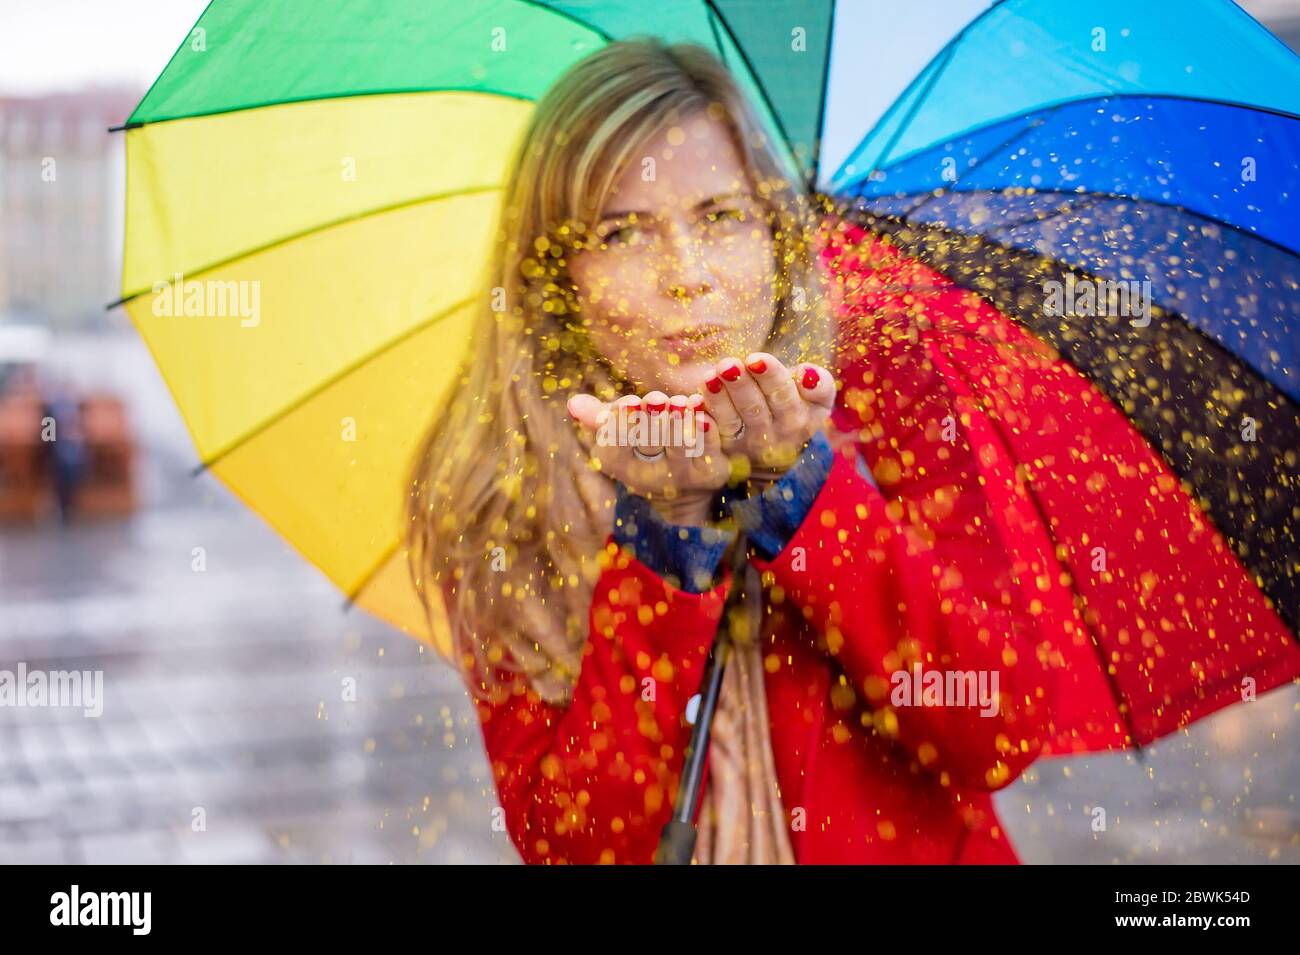 jeune femme blonde tenant un parapluie de couleur arc-en-ciel dans une ambiance festive le jour de pluie. confetti de paillettes soufflantes Banque D'Images